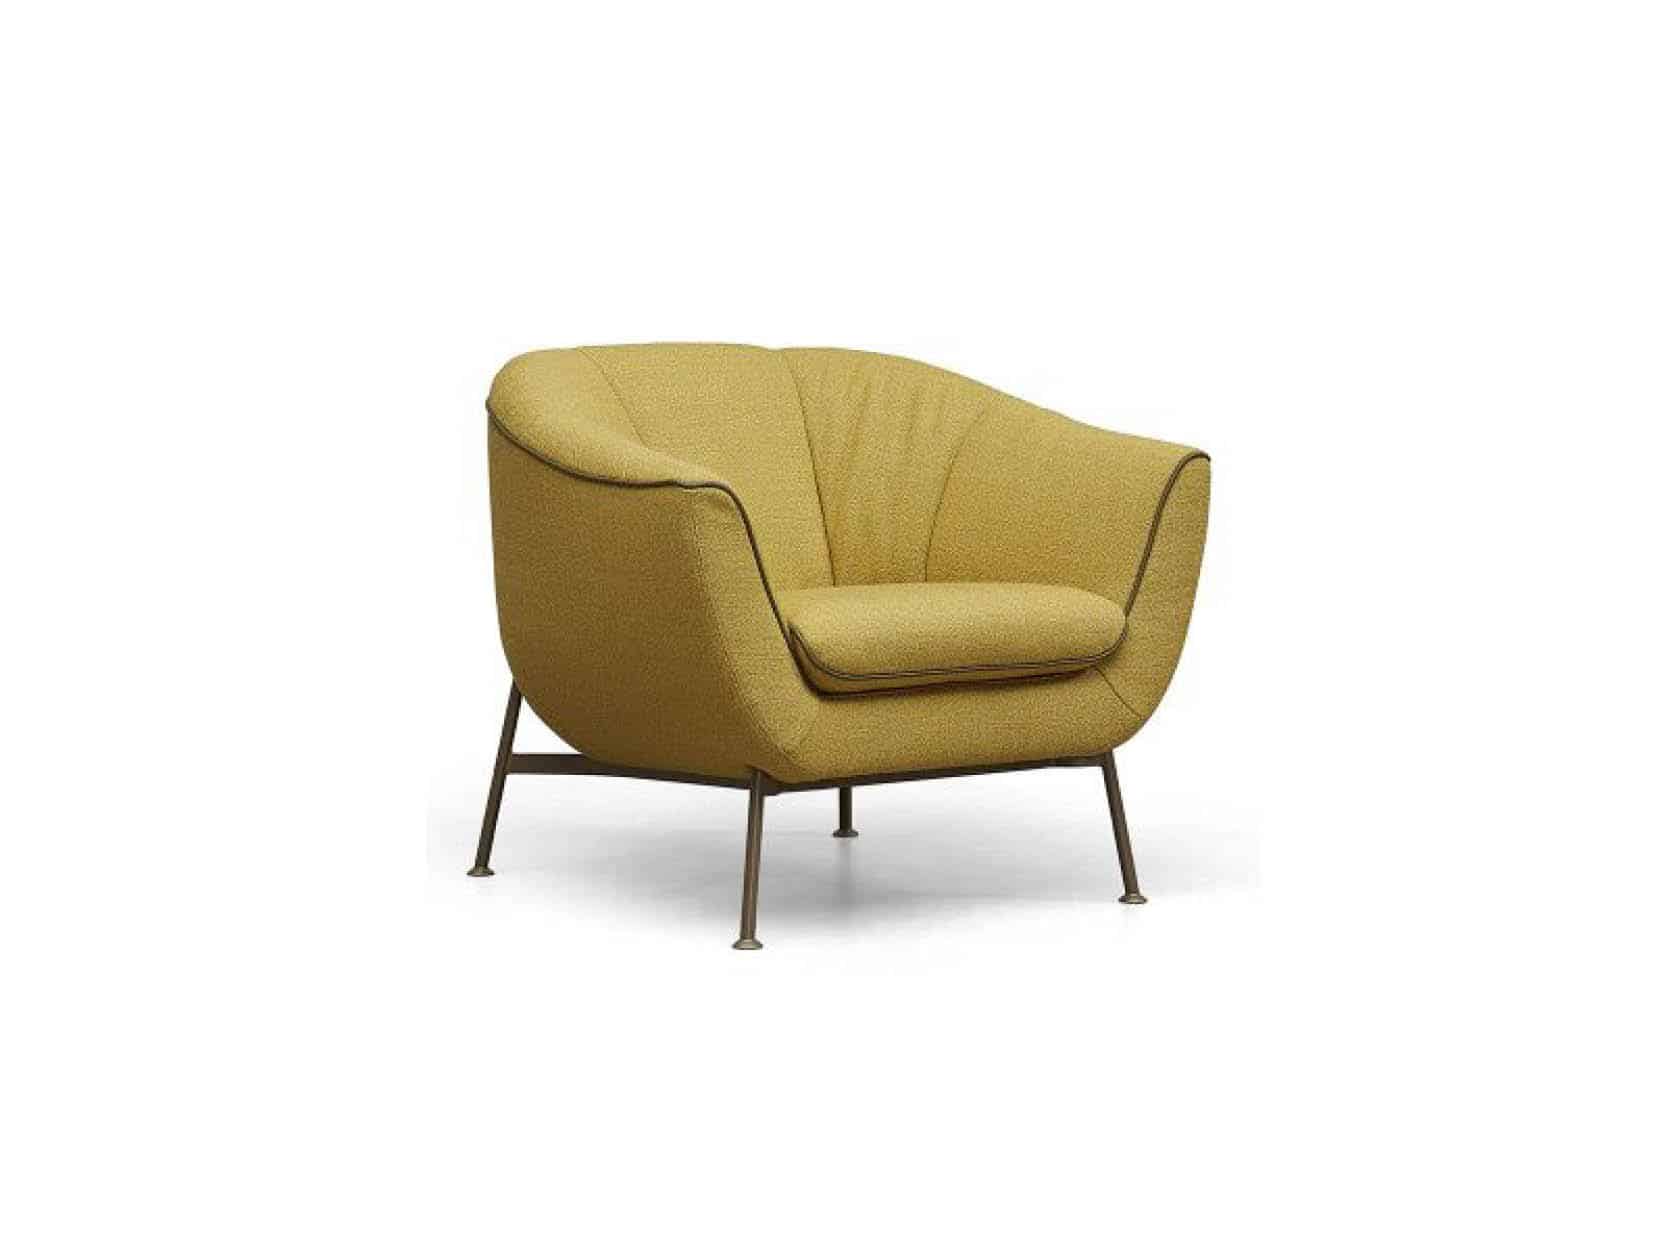 Productafbeelding van Gealux fauteuil Musa